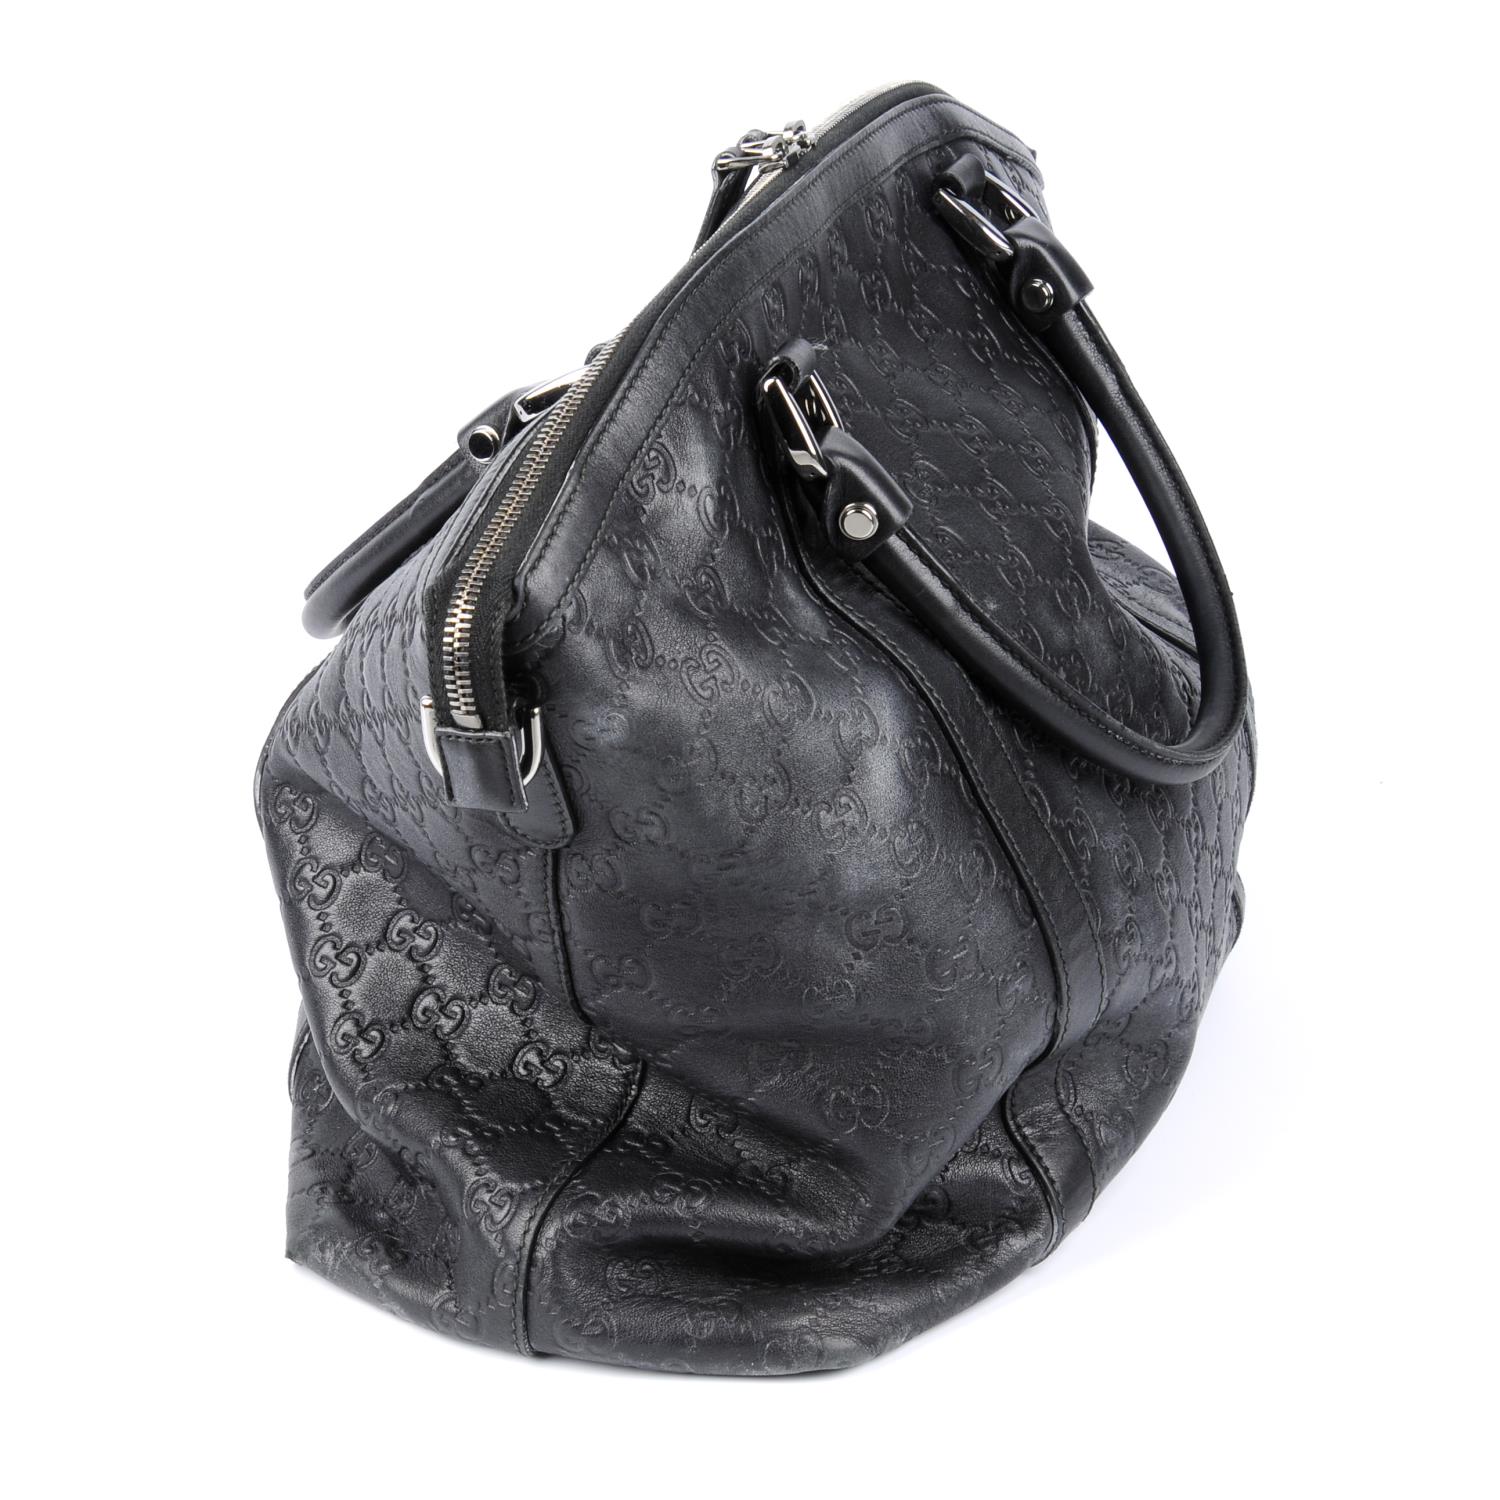 GUCCI - a black Guccissima leather handbag. - Image 3 of 5